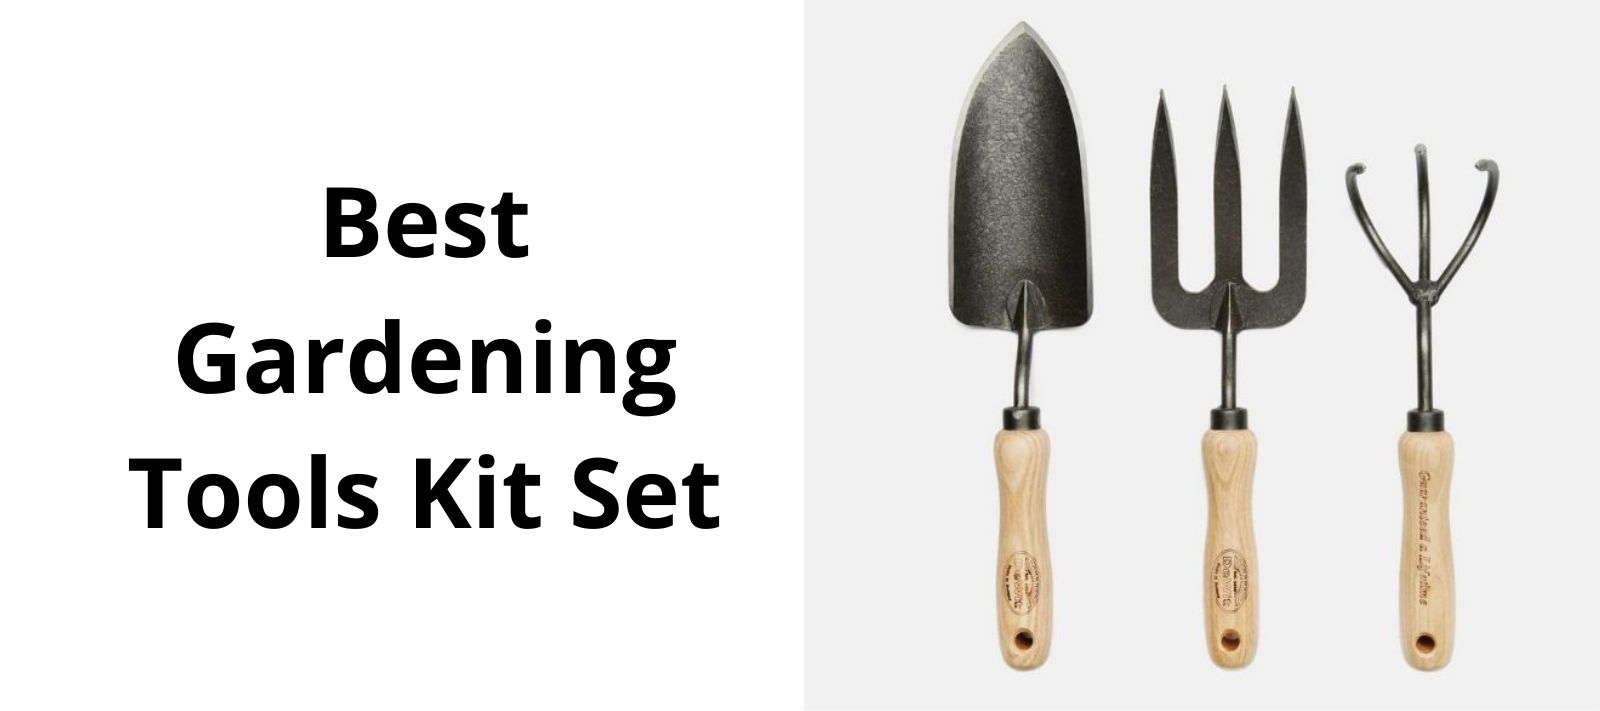 Best gardening tools kit set